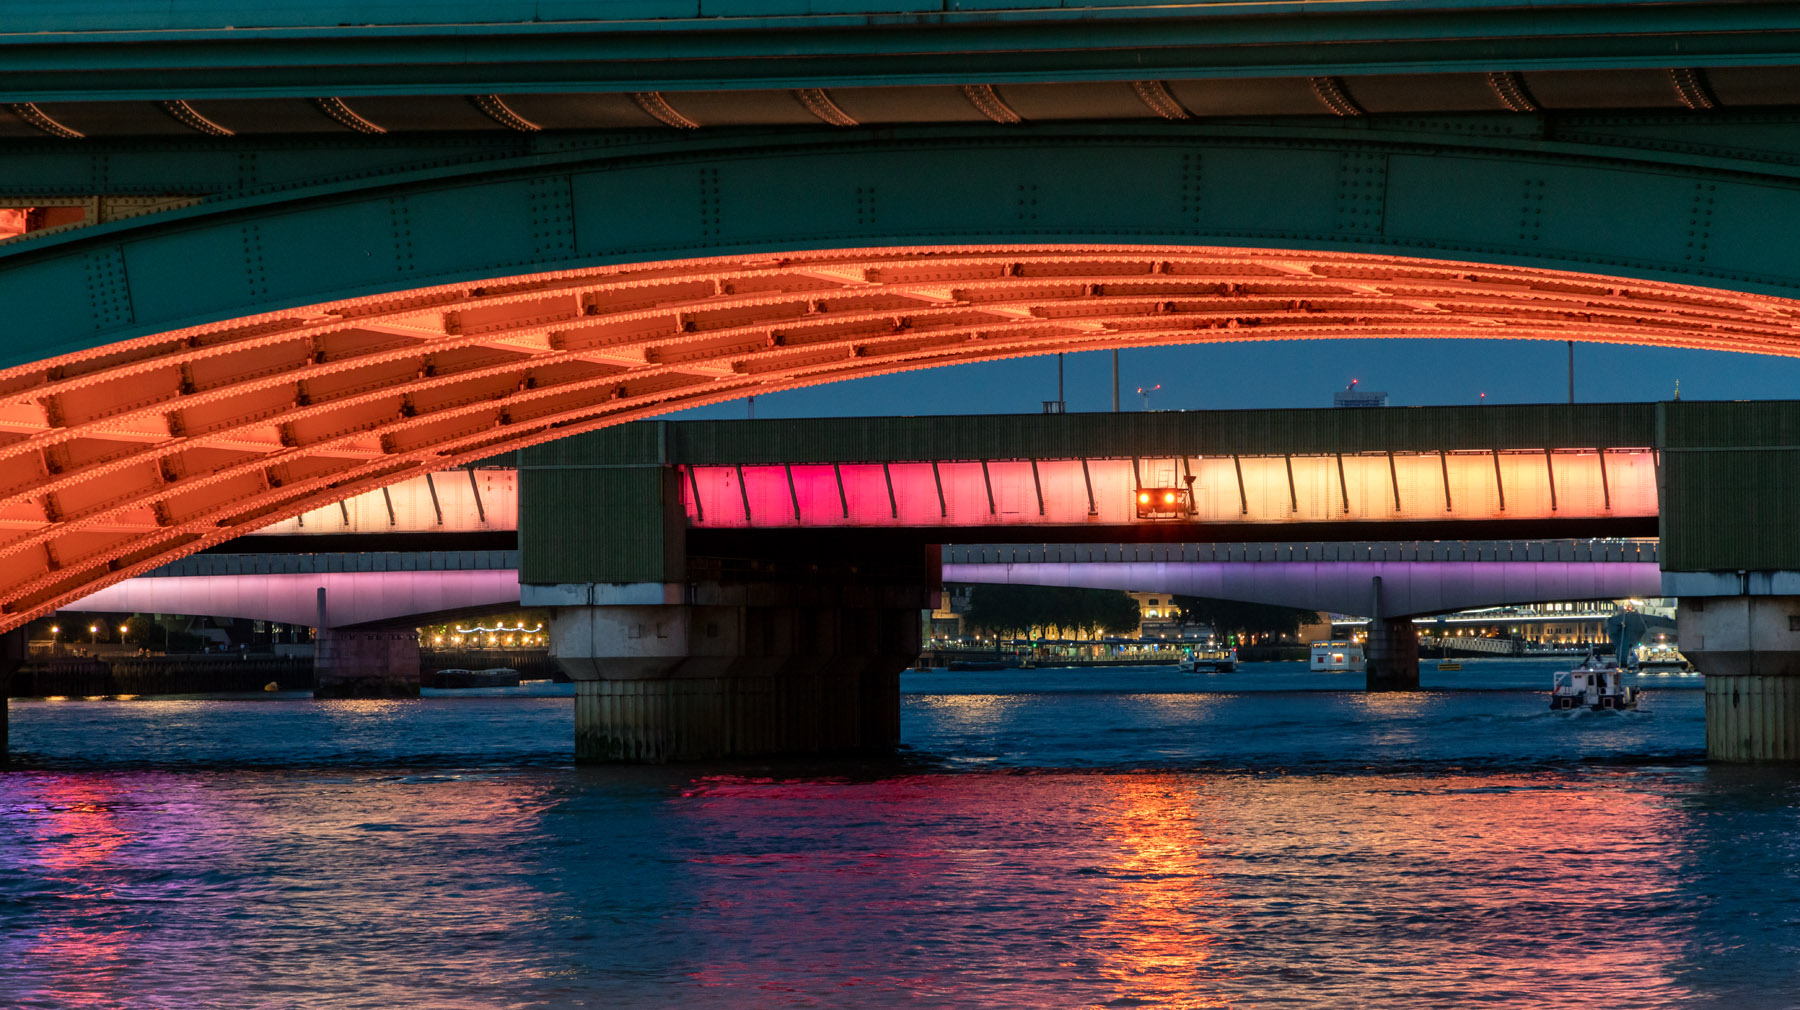  Illuminated River Project by Leo Villareal - Photos by Joas Souza  